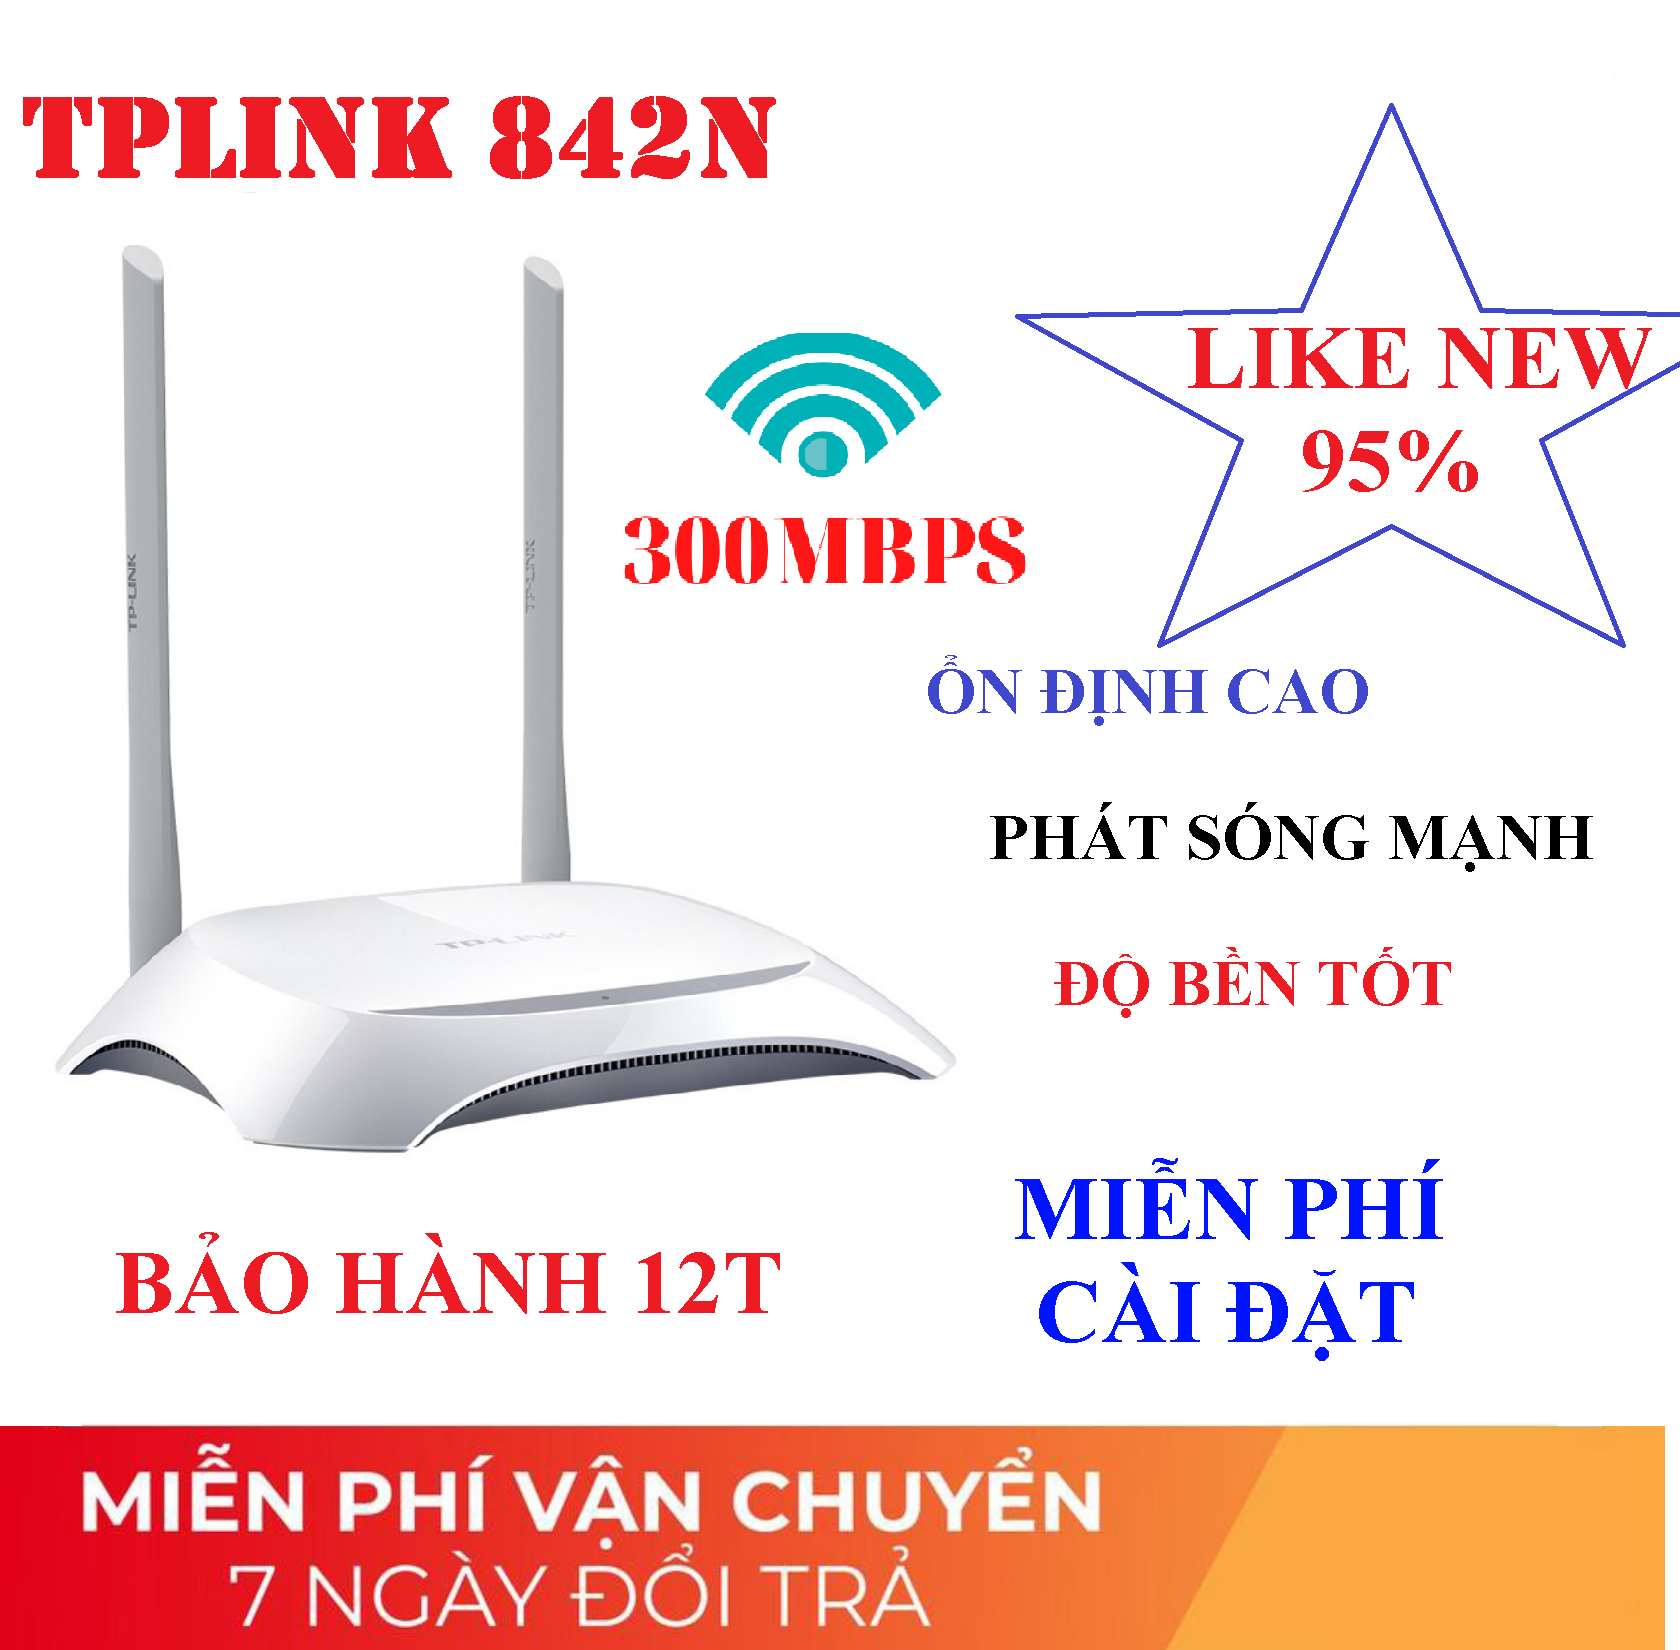 [BẢO HÀNH 12T] Router Wifi TPlink, Modem Wifi TPLink 842N  LIKE NEW 95% 2 râu chuẩn tốc độ 300 Mbps phát sóng khỏe, Bộ phát wifi Cục phát wifi, Bộ kích sóng wifi